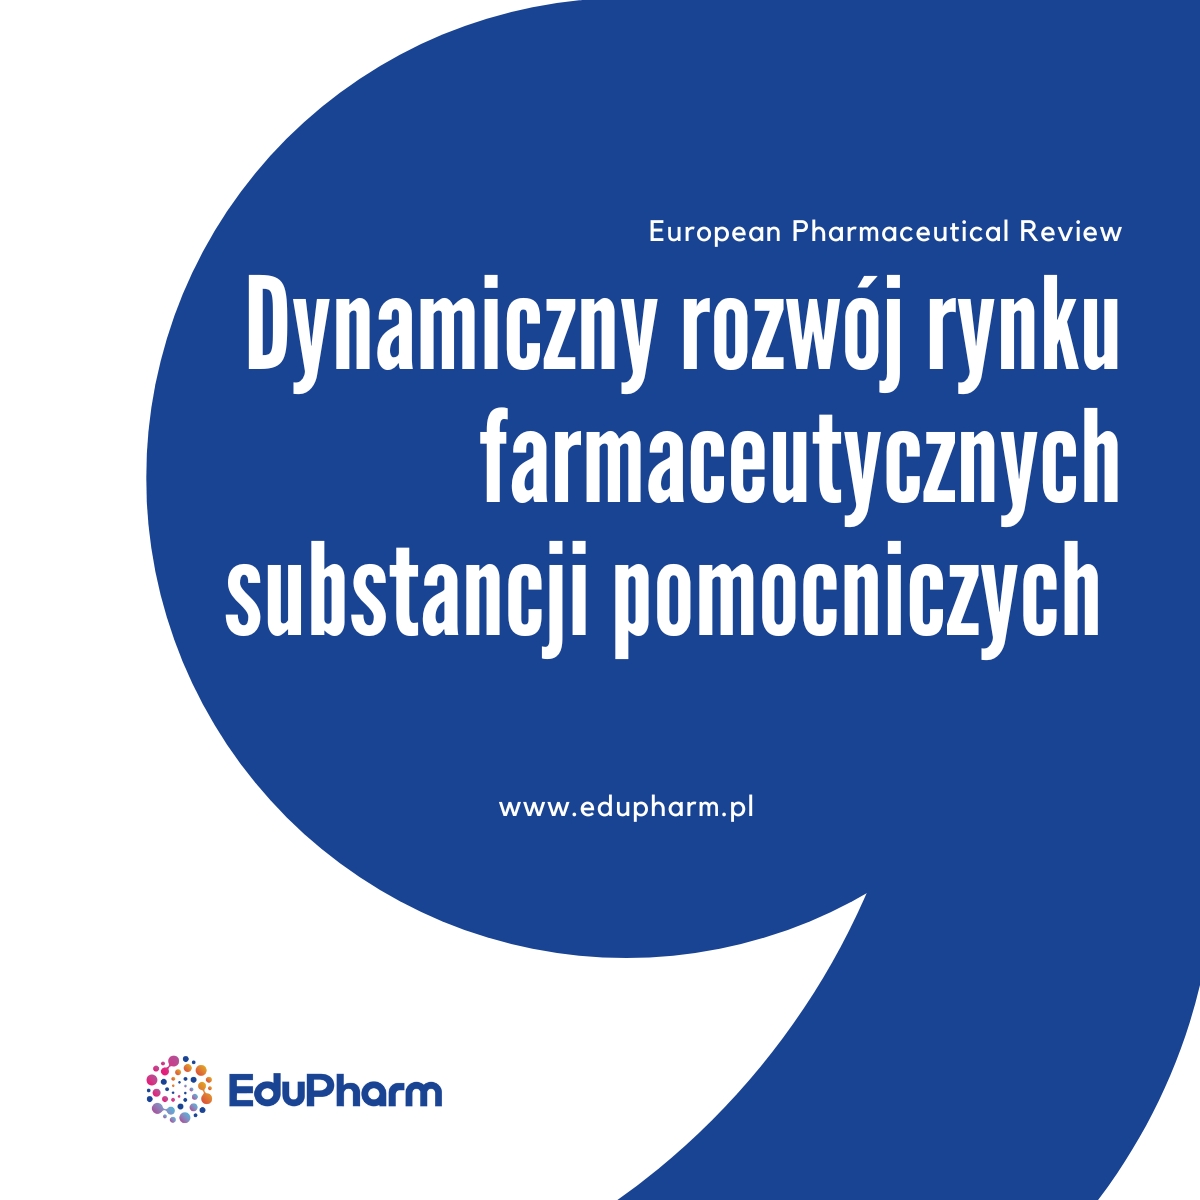 www.edupharm.pl